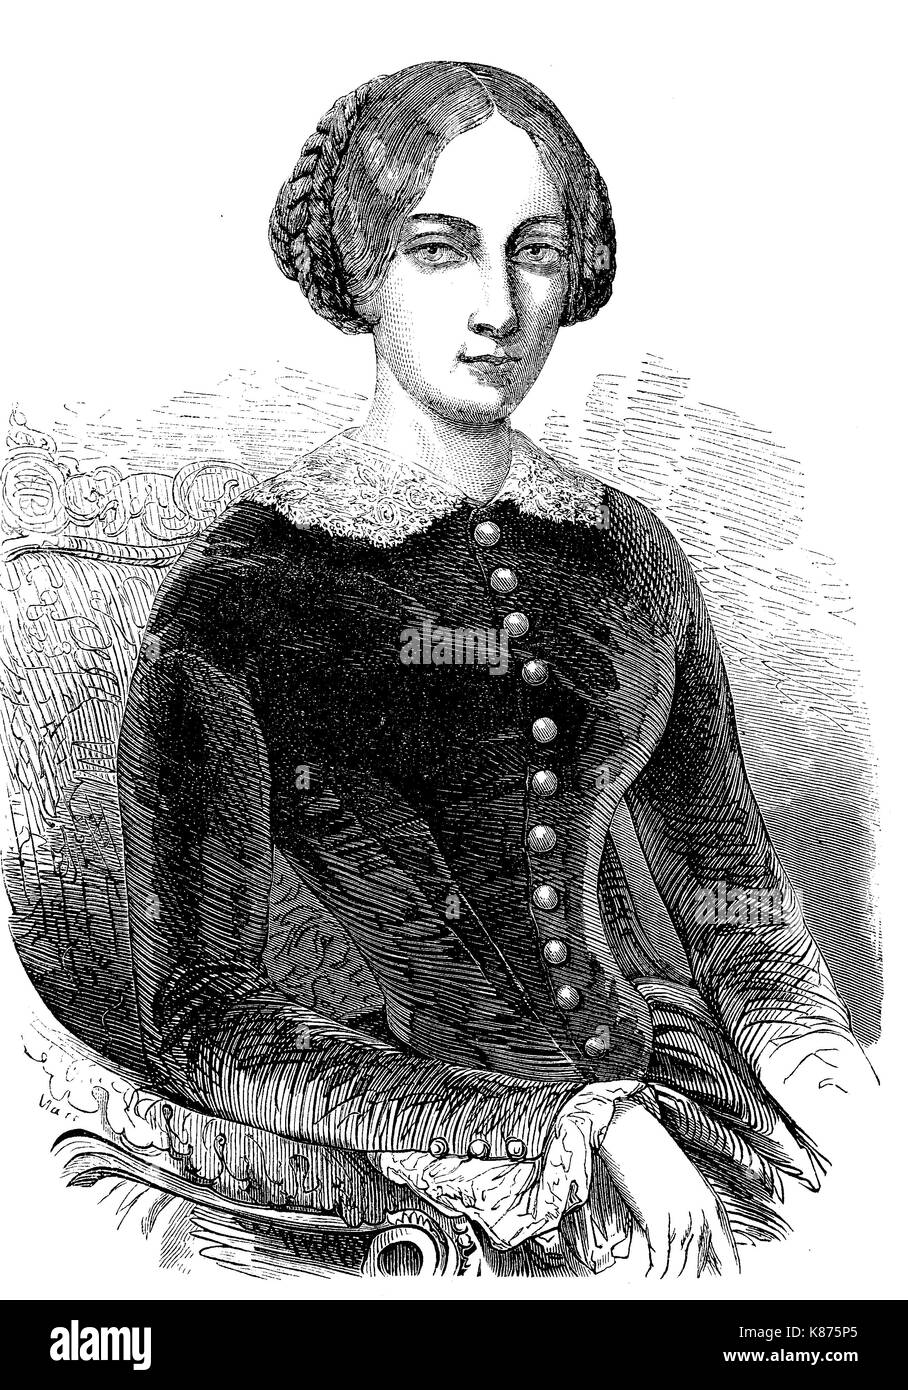 María Alexandrovna, nació la Princesa María de Hesse y del Rin, 1824 - 1880, fue Emperatriz Consorte de Rusia como la primera esposa del emperador Alexander II, mejor reproducción digital de un original del siglo XIX woodprint Foto de stock